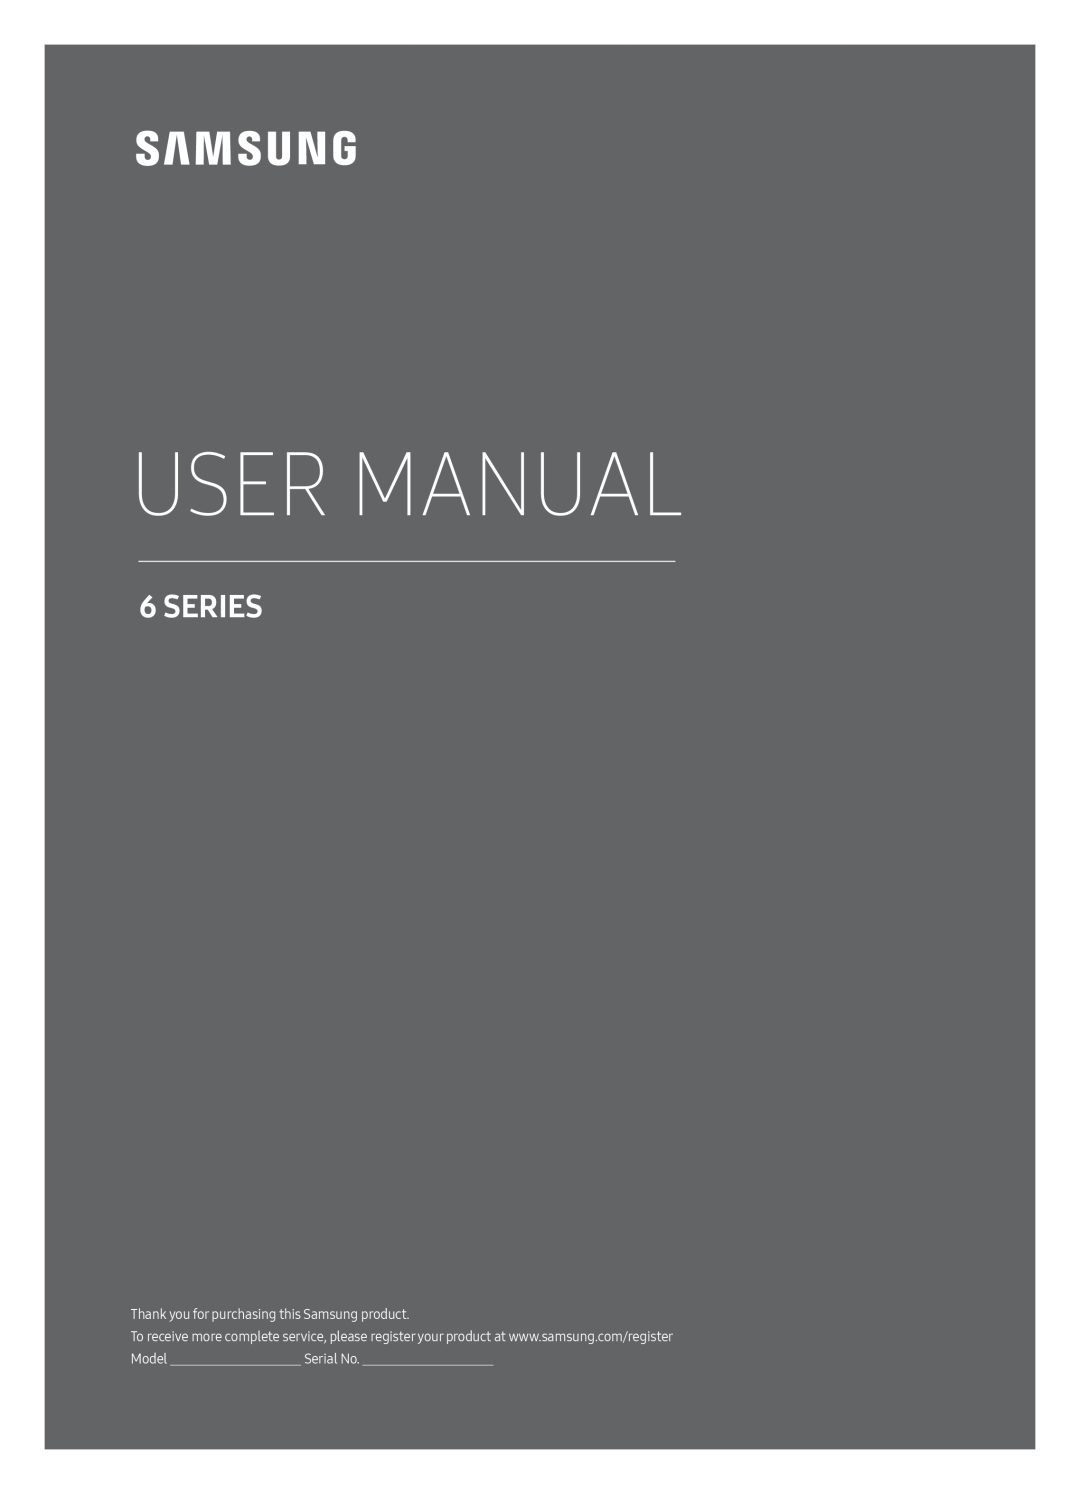 Samsung UE50MU6179UXZG, UE65MU6179UXZG, UE49MU6179UXZG, UE75MU6179UXZG, UE55MU6179UXZG manual User Manual, Series, Serial No 